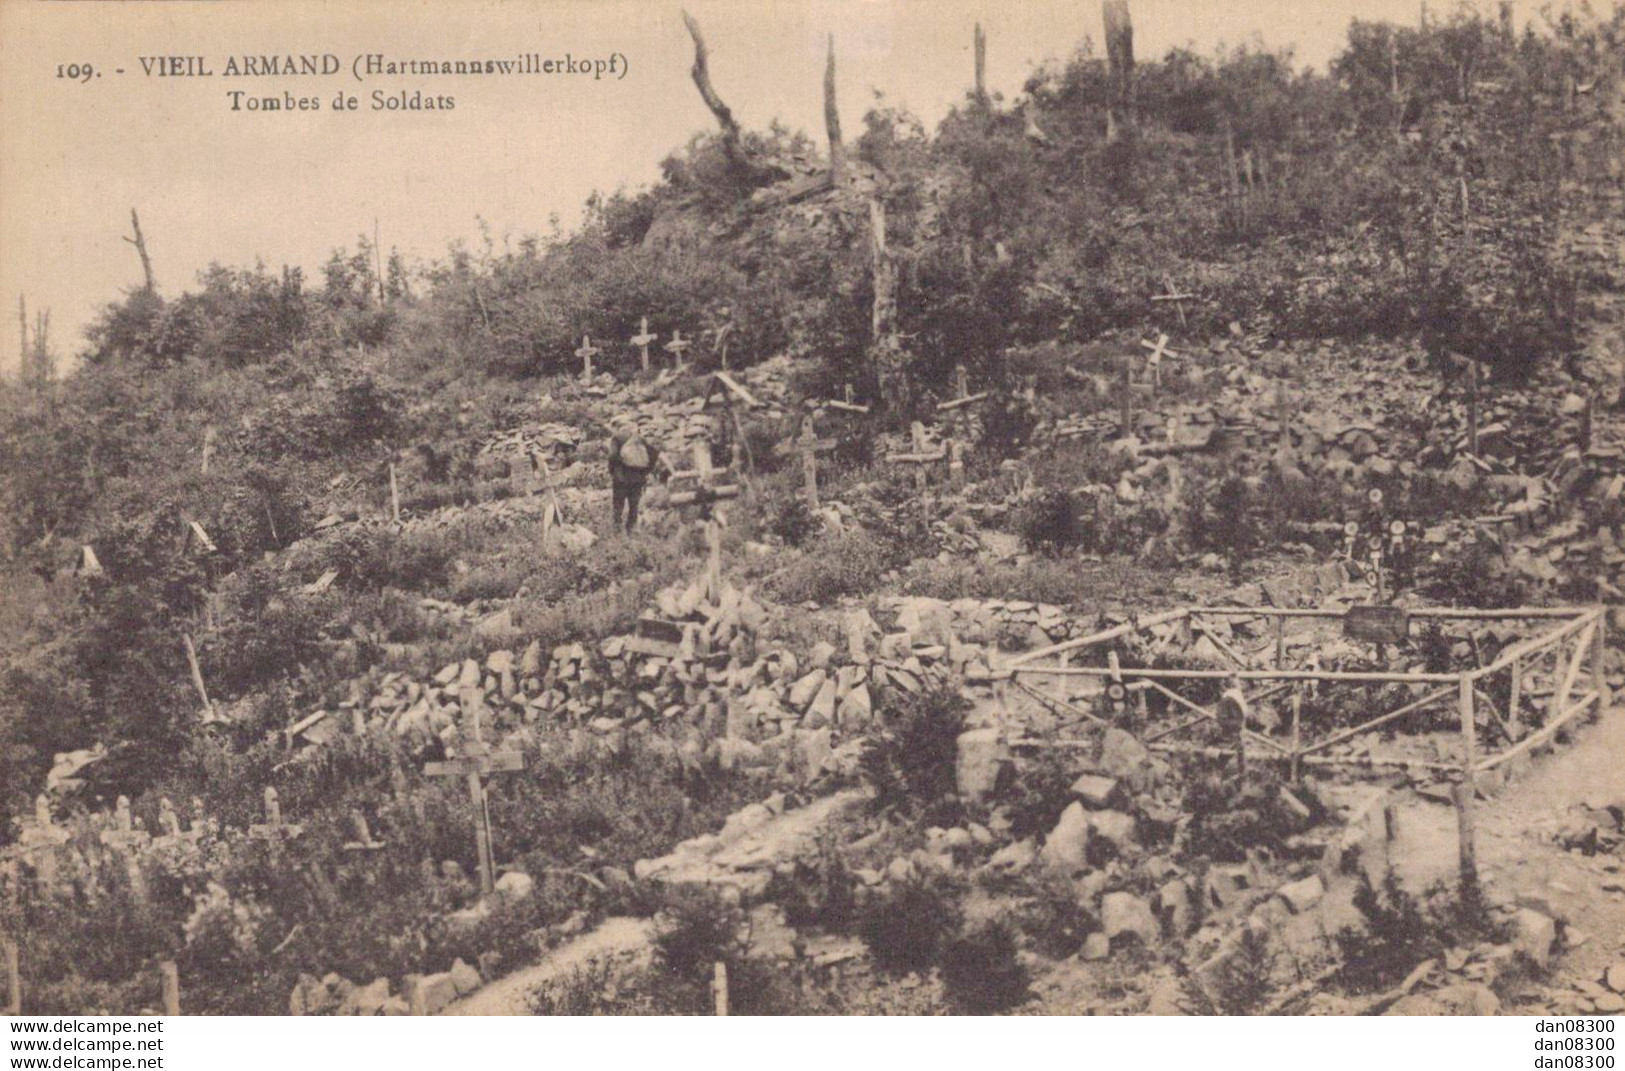 67 VIEIL ARMAND TOMBES DE SOLDATS - War Cemeteries